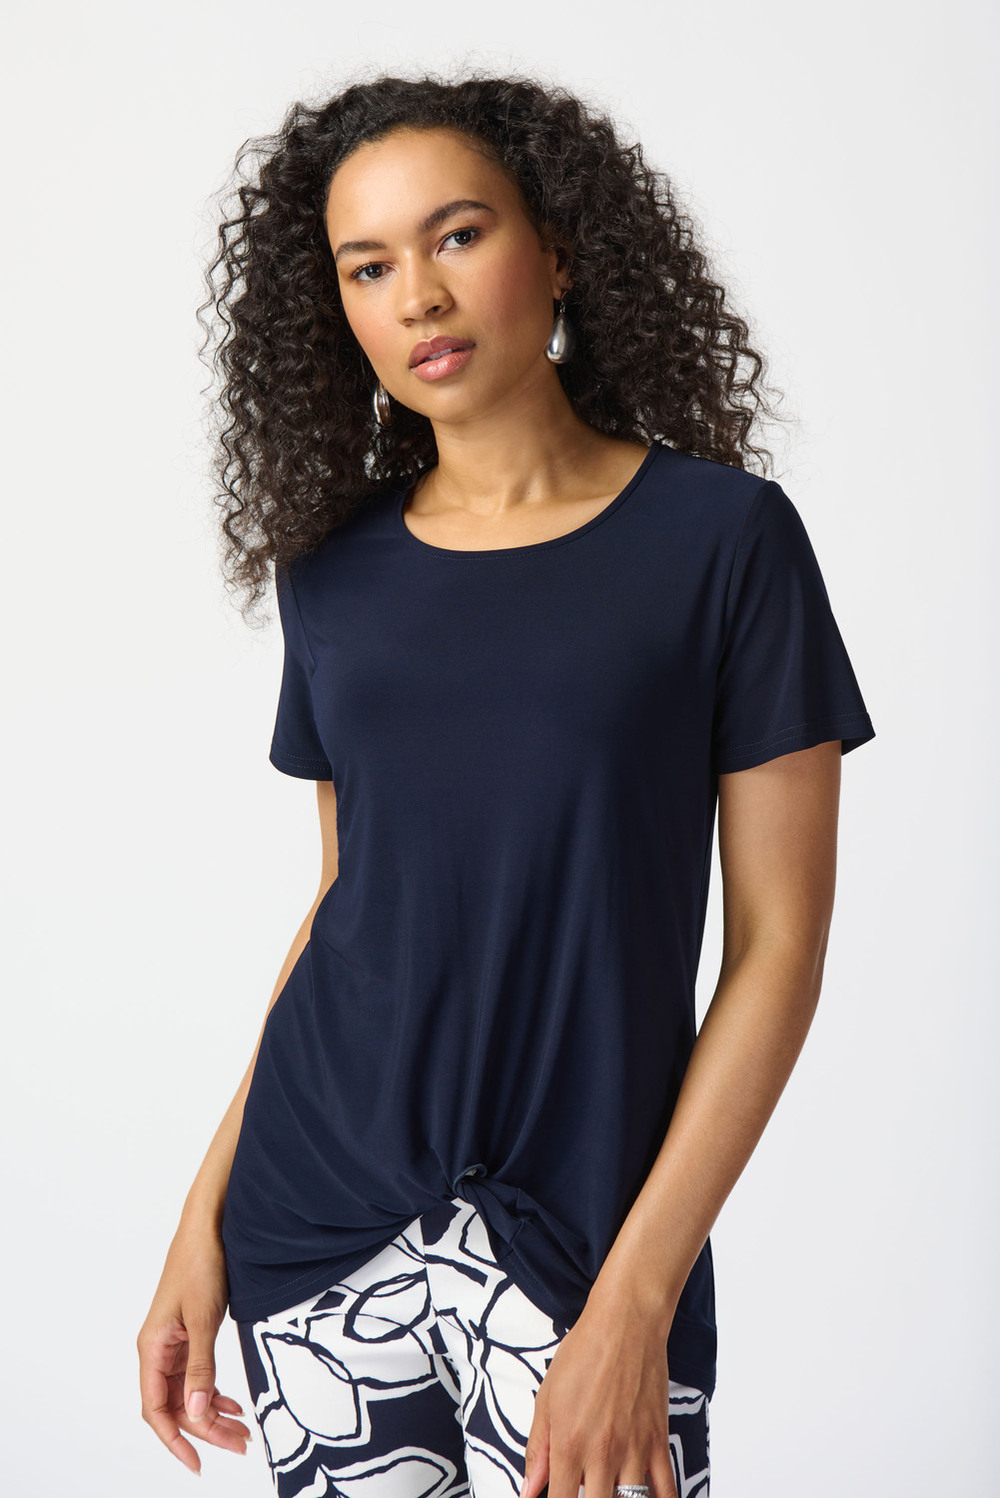 T-shirt long, finition plissée modèle 241290. Bleu Nuit